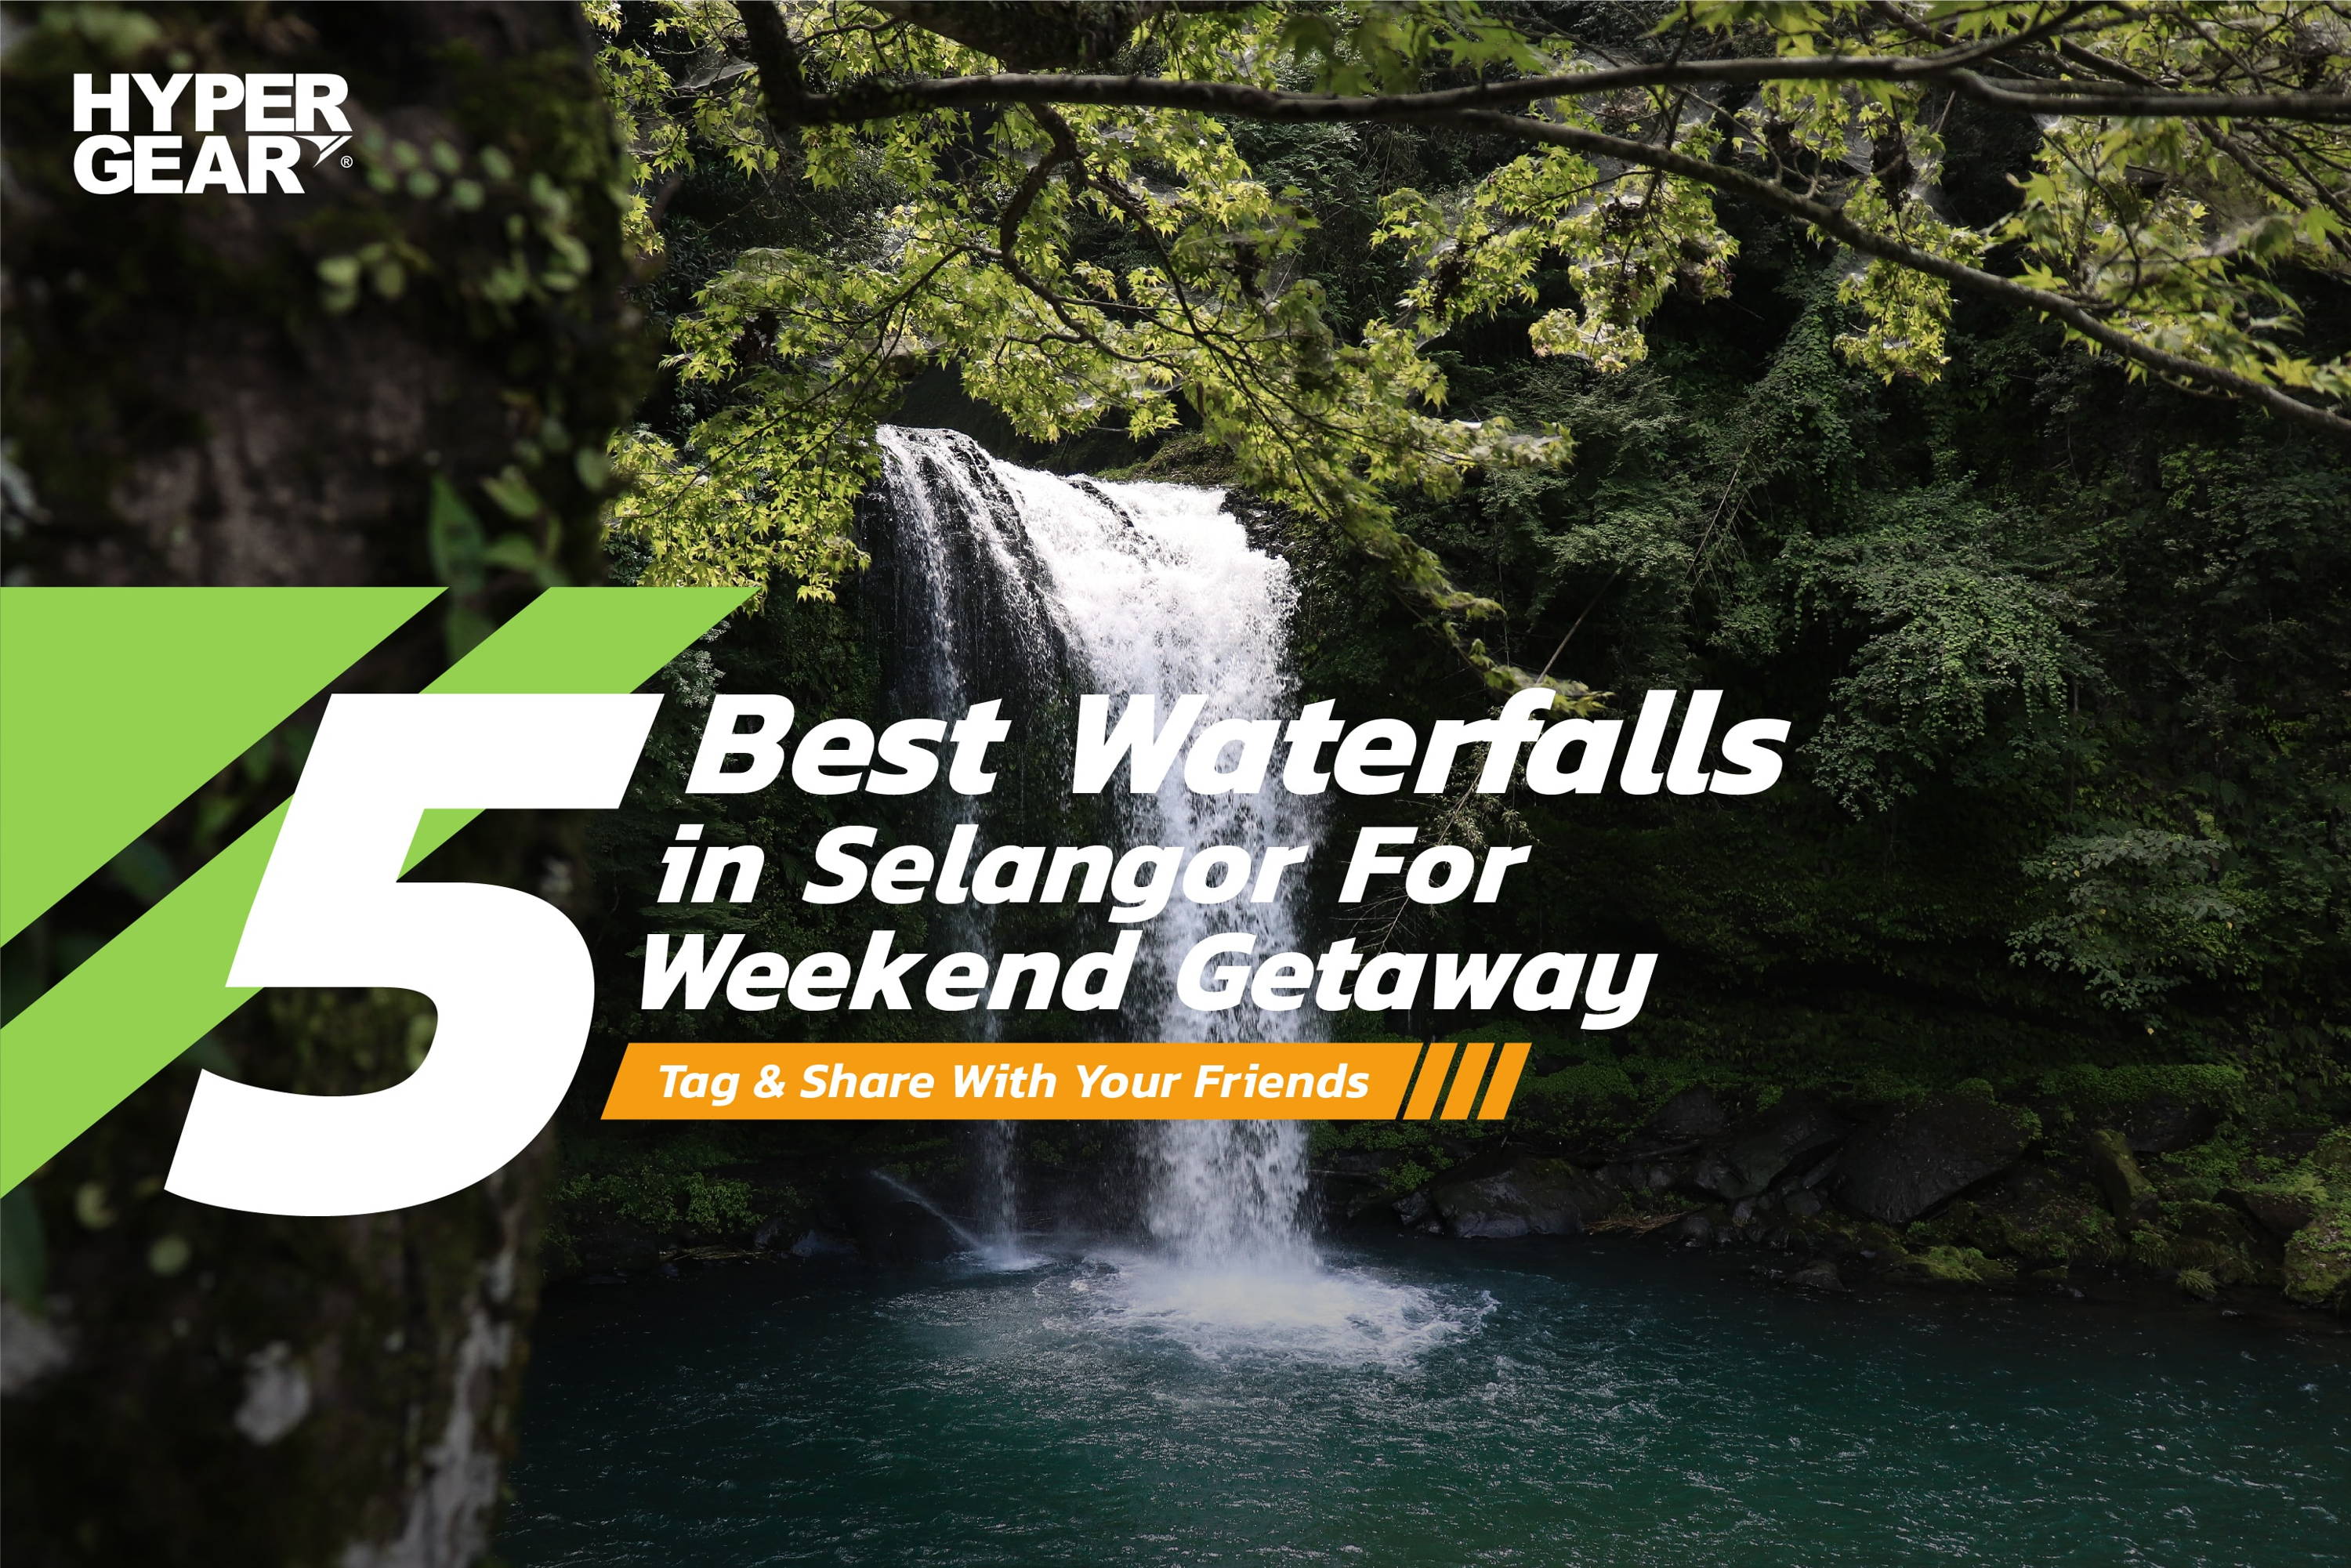 5 Best Waterfalls in Selangor for Weekend Getaway - Hypergear